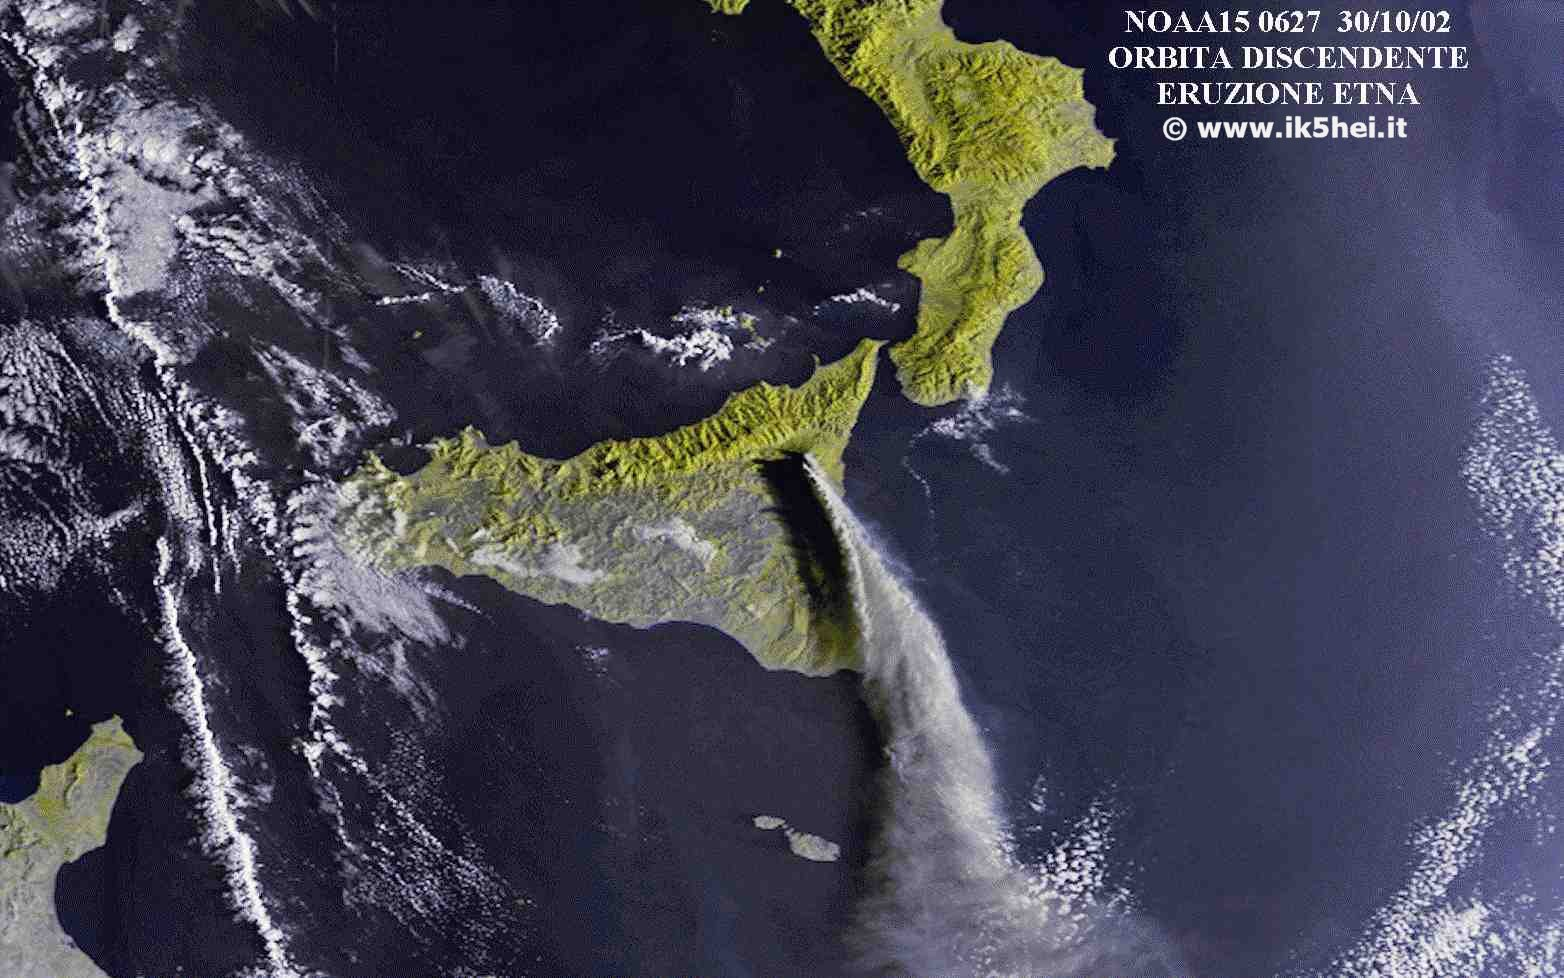 Eruzione Etna Ottobre 2002